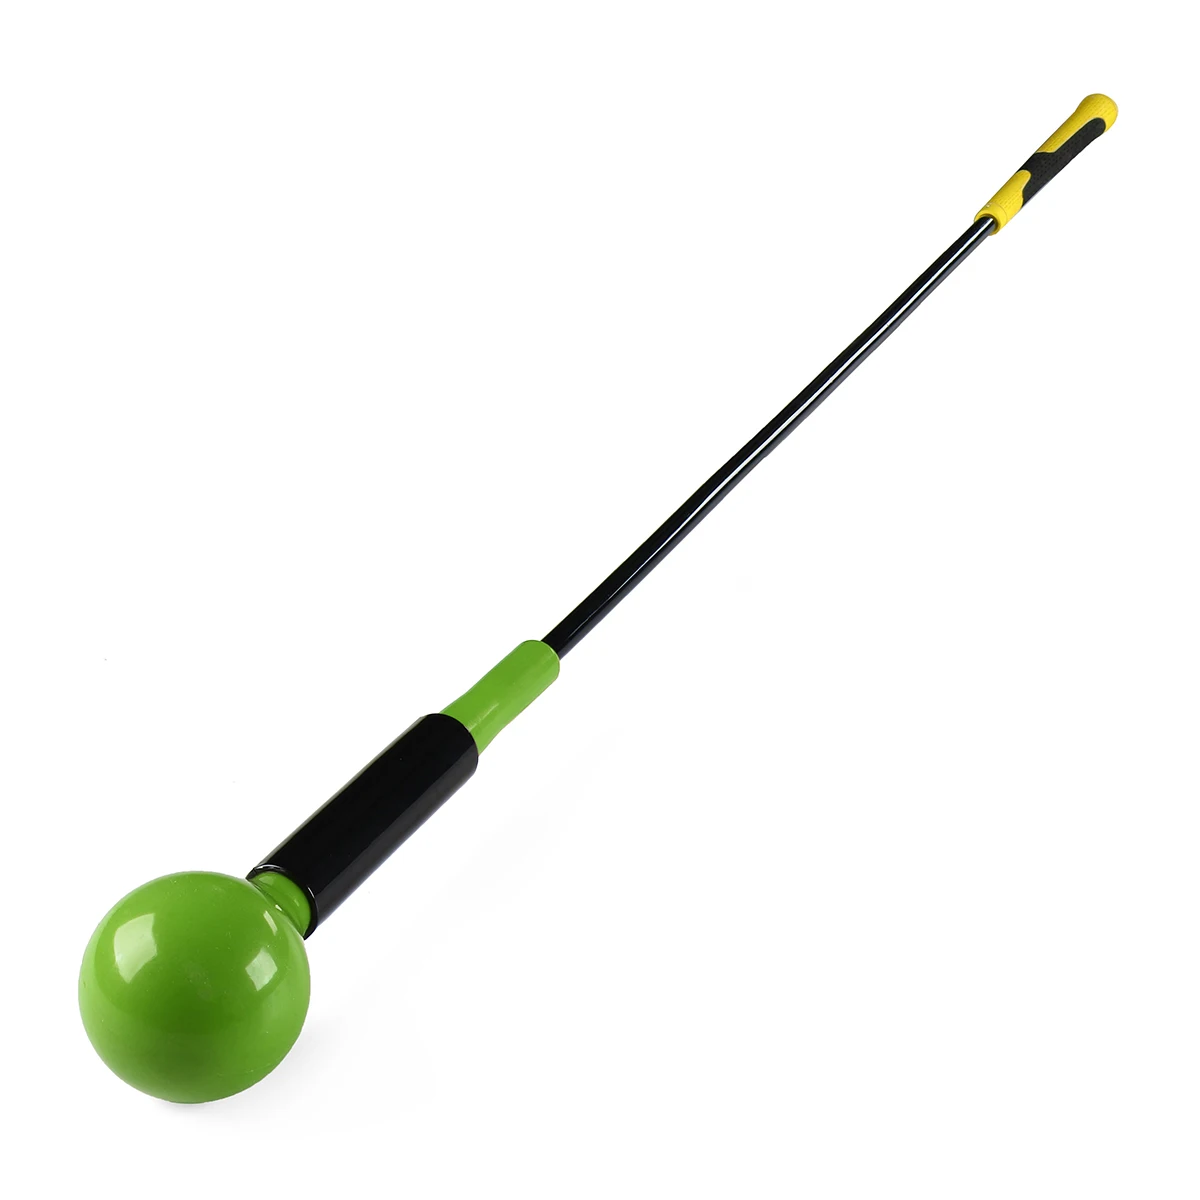 120 см гольф для комнатных и уличных игр качели инструменты начинающих вспомогательное оборудование для обучения качели палка оборудование для гольфа - Цвет: Зеленый